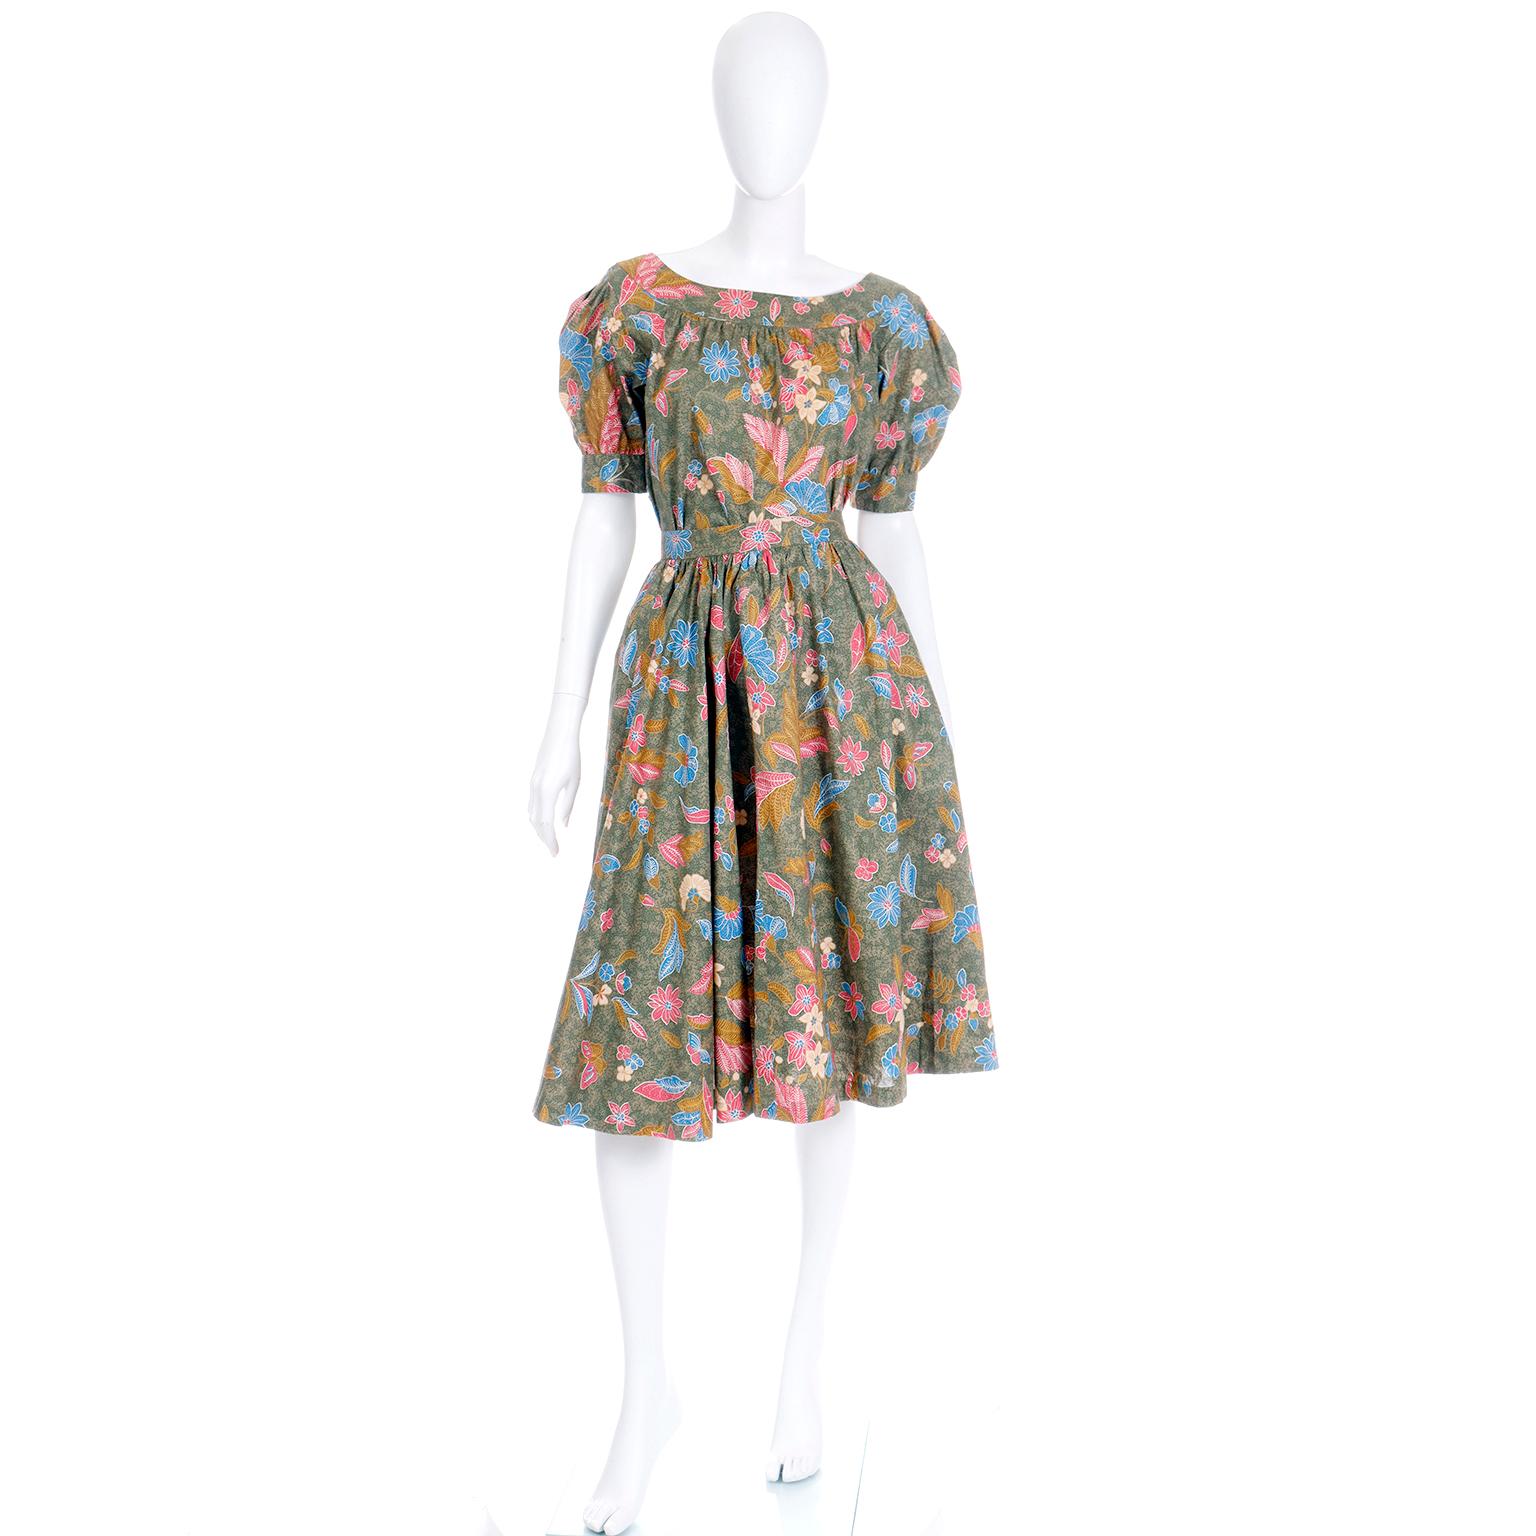 Voici une magnifique robe de jour deux pièces à imprimé floral et papillon de la collection Yves Saint Laurent printemps/été 1986. L'ensemble haut et jupe assortis ressemble à une robe lorsqu'il est porté ensemble, mais peut être porté séparément.